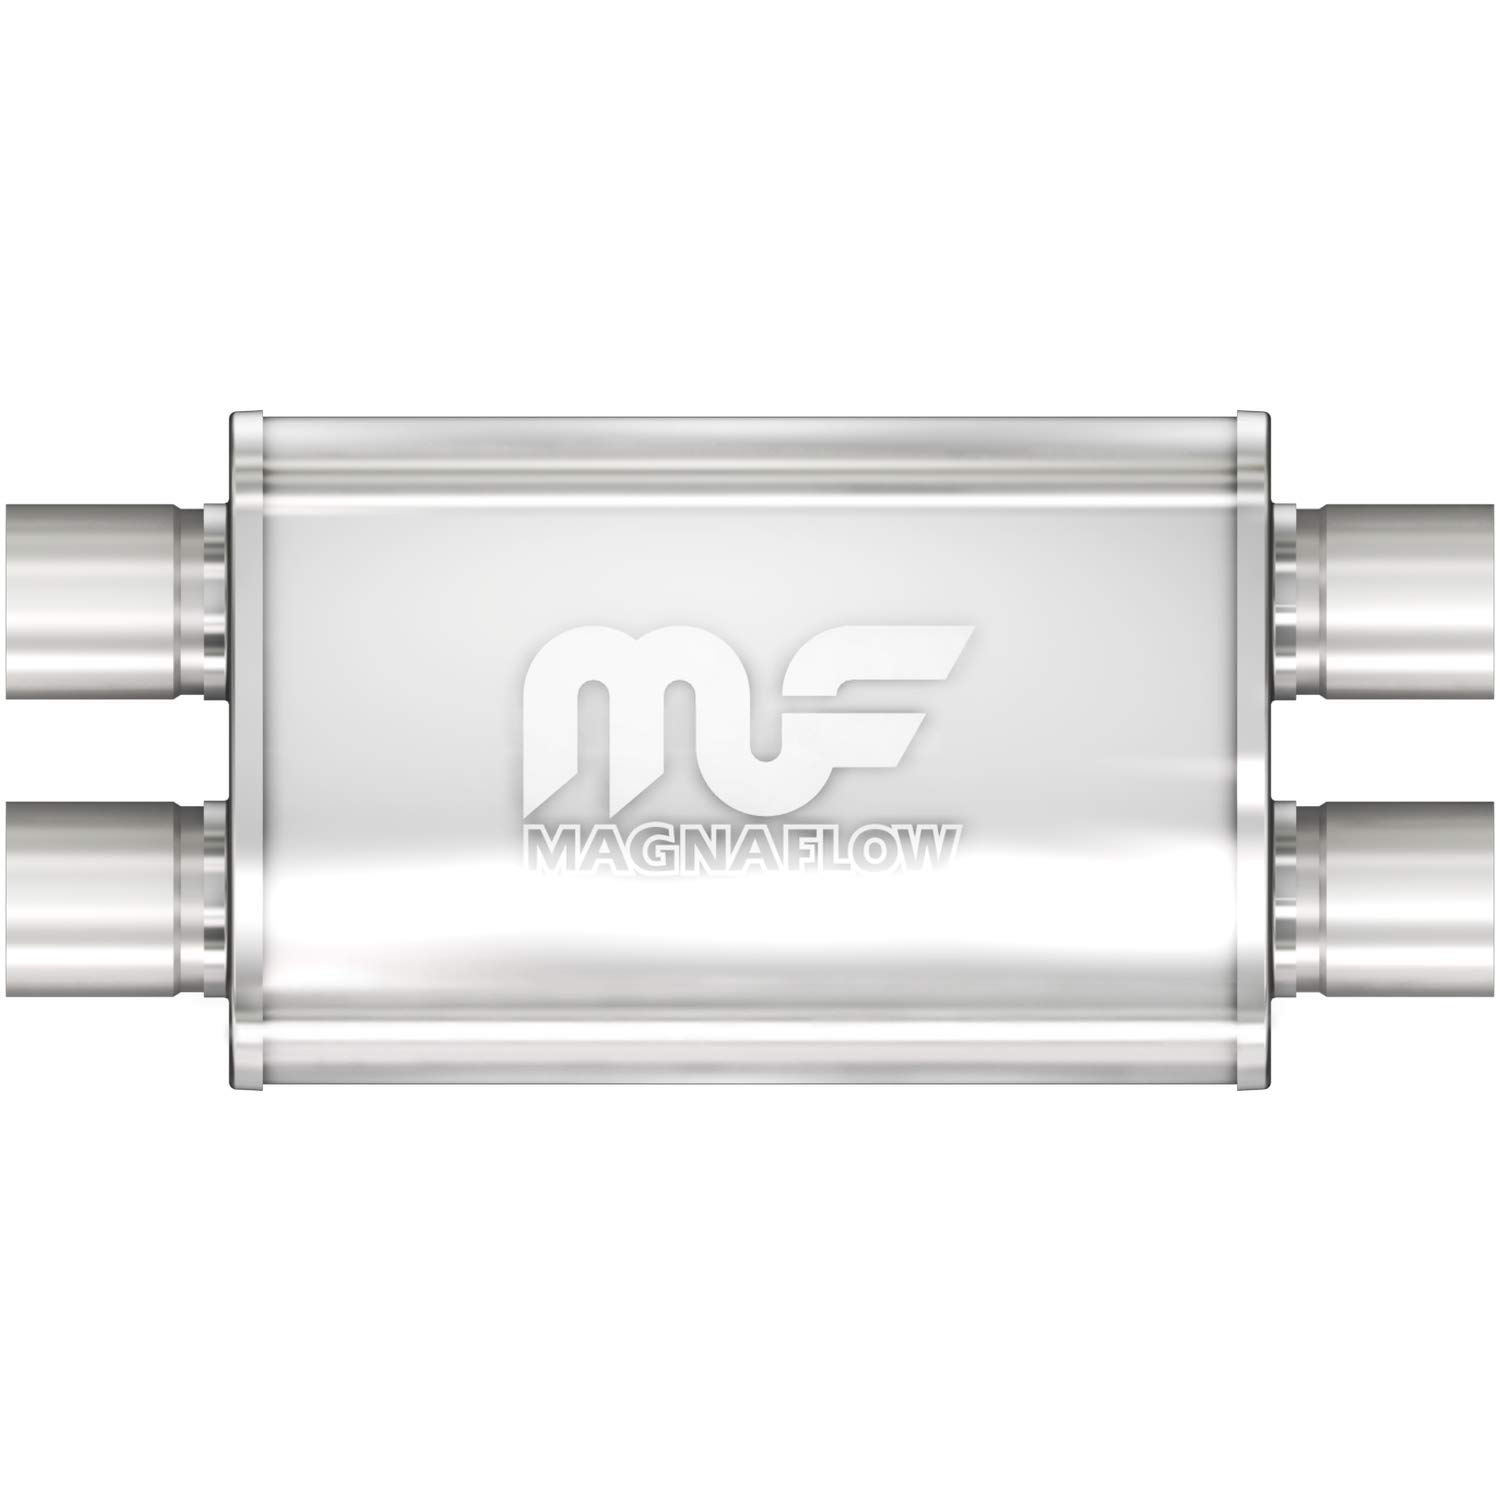 MagnaFlow 11386 Auspuffschalldämpfer, oval, 10,2 x 22,9 cm, gerade, 6,3 cm Einlass-/Auslassdurchmesser, 50,8 cm Gesamtlänge, seidenmatt, klassischer tiefer Auspuff-Sound von MagnaFlow Exhaust Products